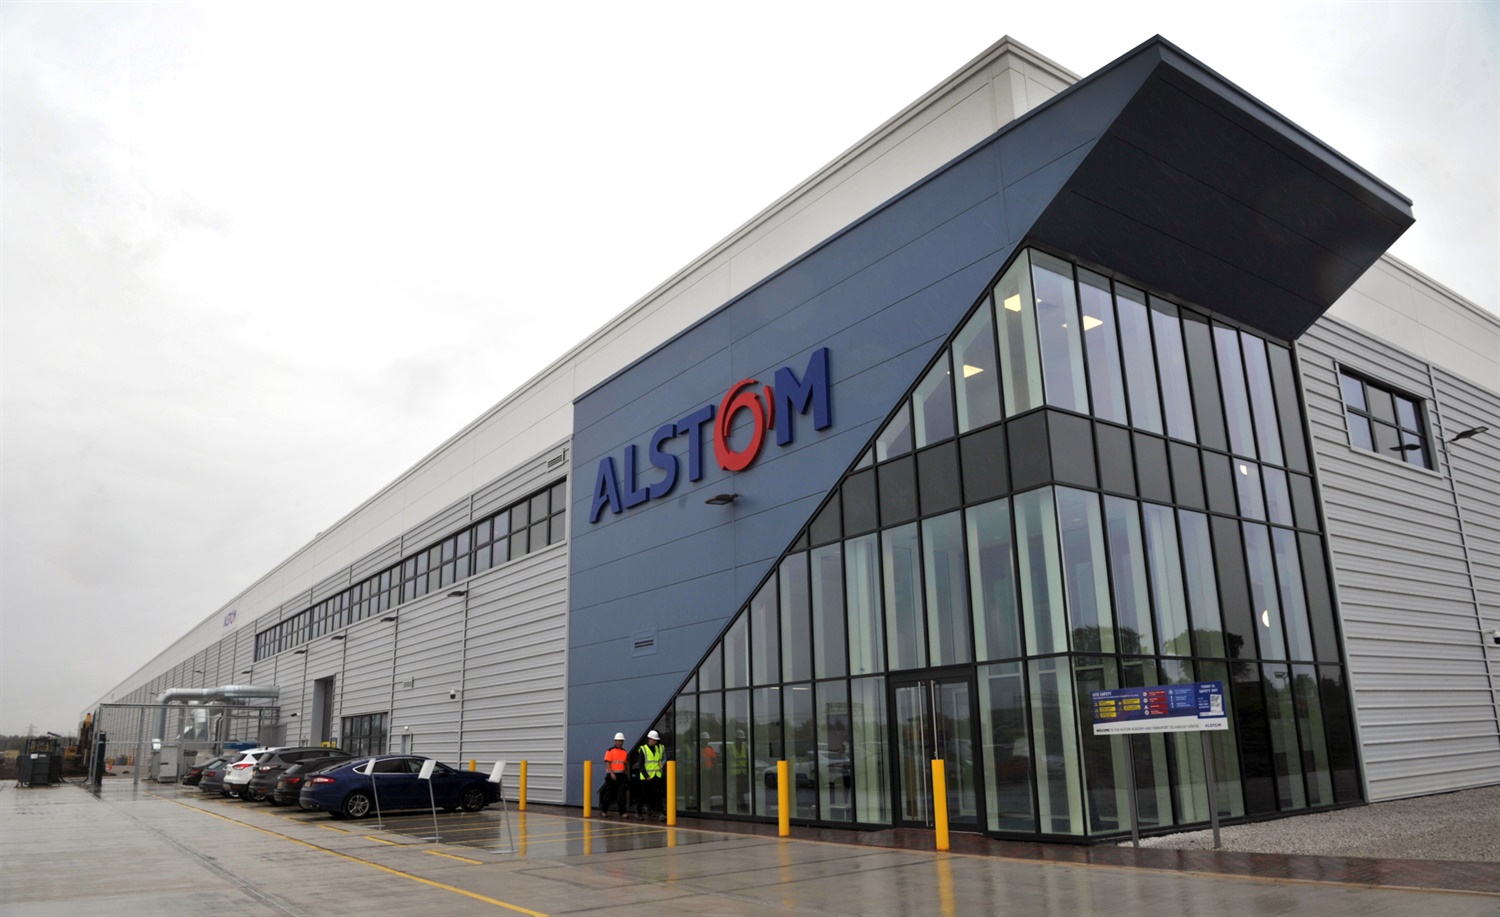 Alstom to close historic Preston rail site